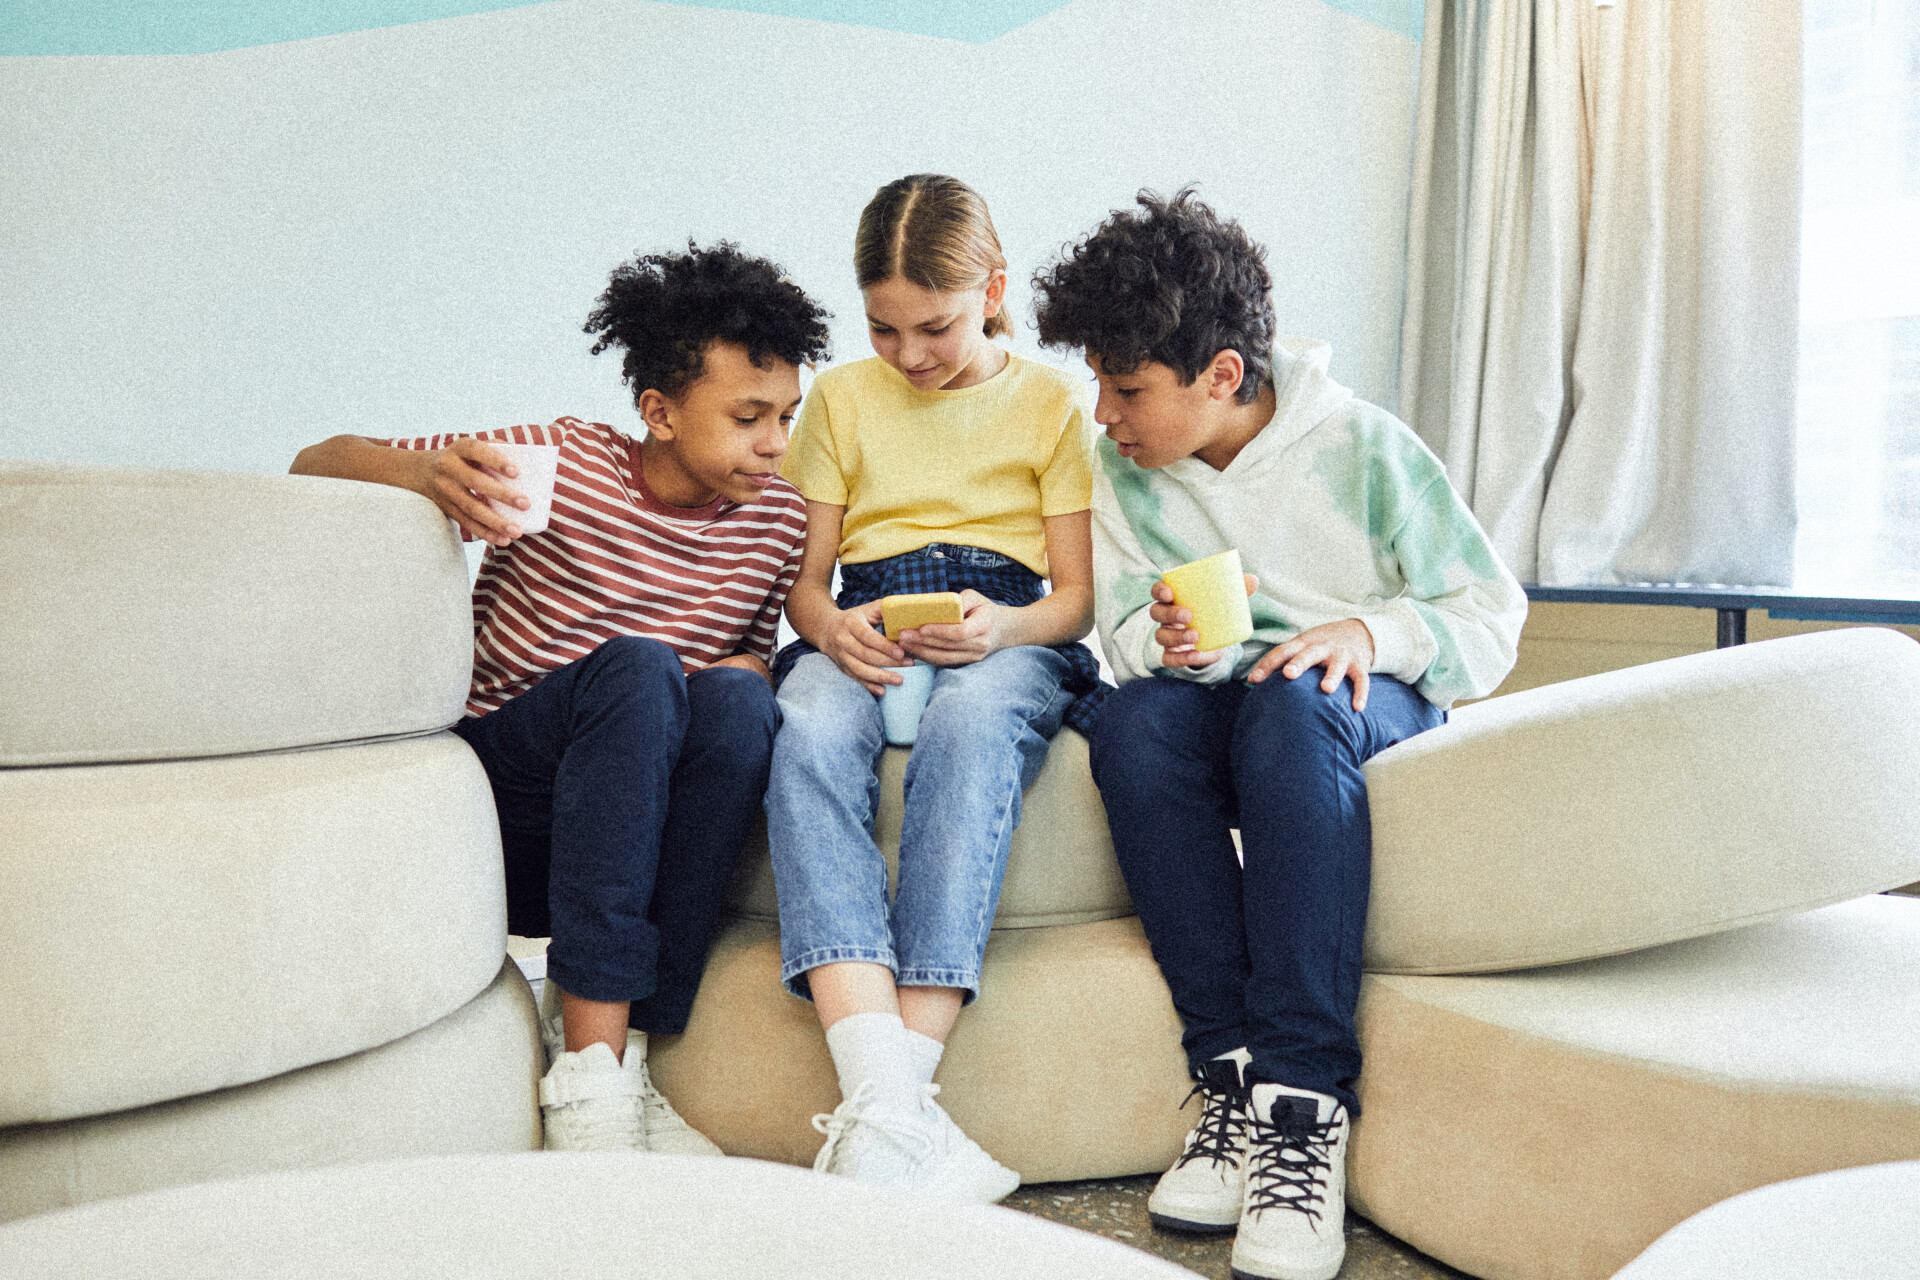 Bilde av tre barn som ser på mobil som illustrerer TV og YouTube som tjeneste.